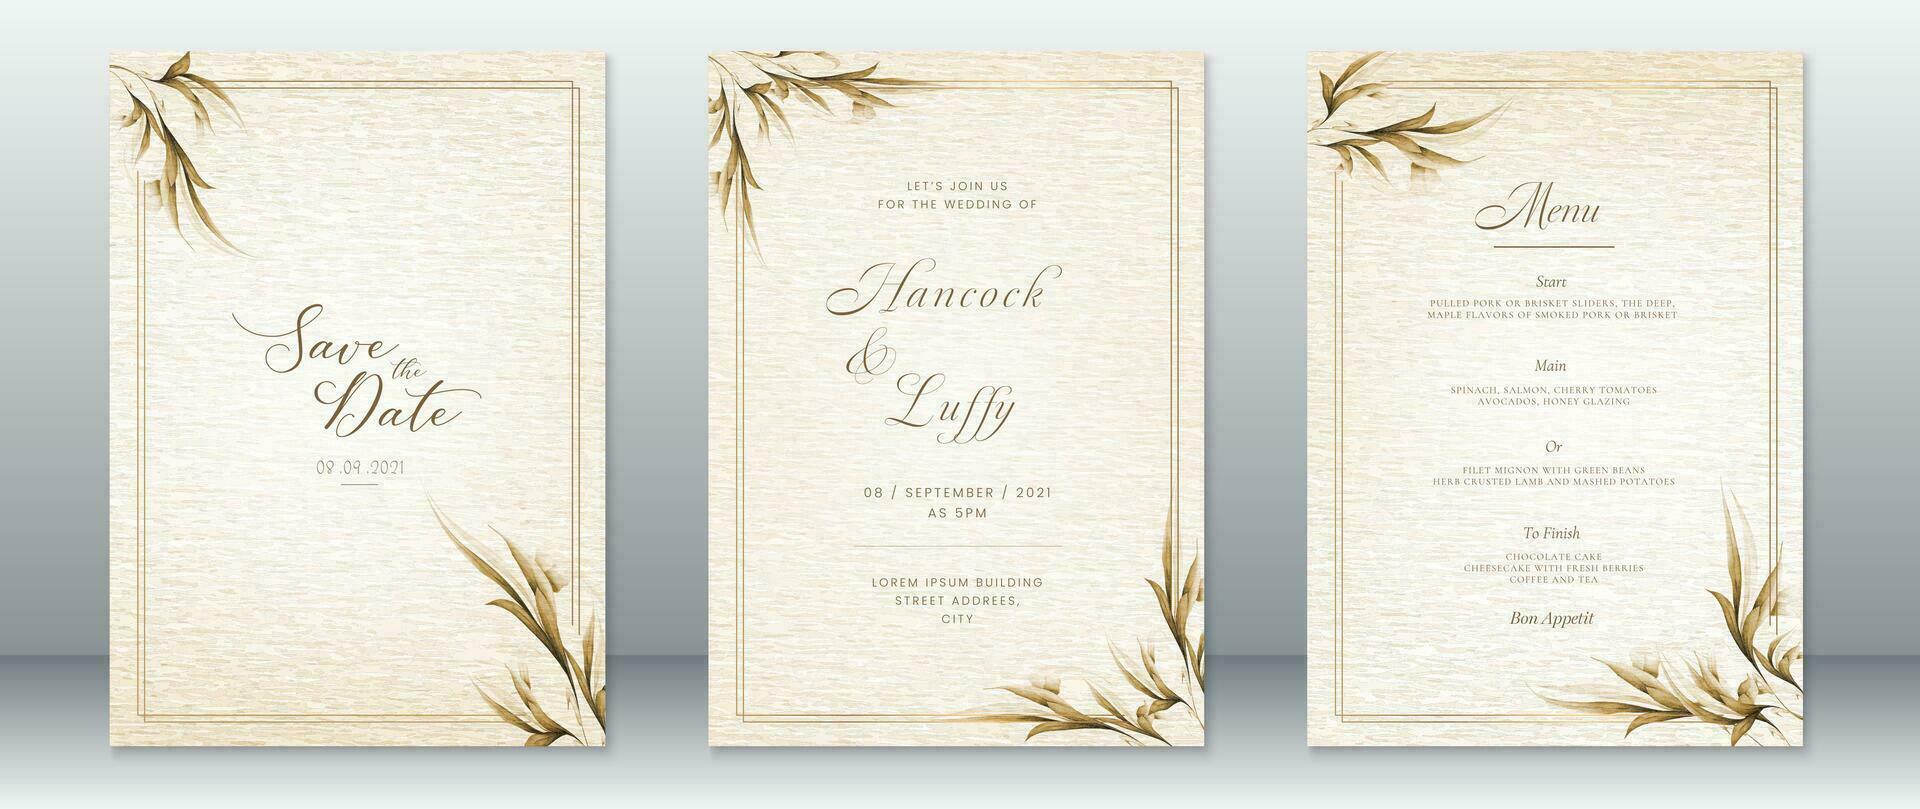 Hochzeit Einladung Karte Vorlage mit Natur Blatt Design vektor